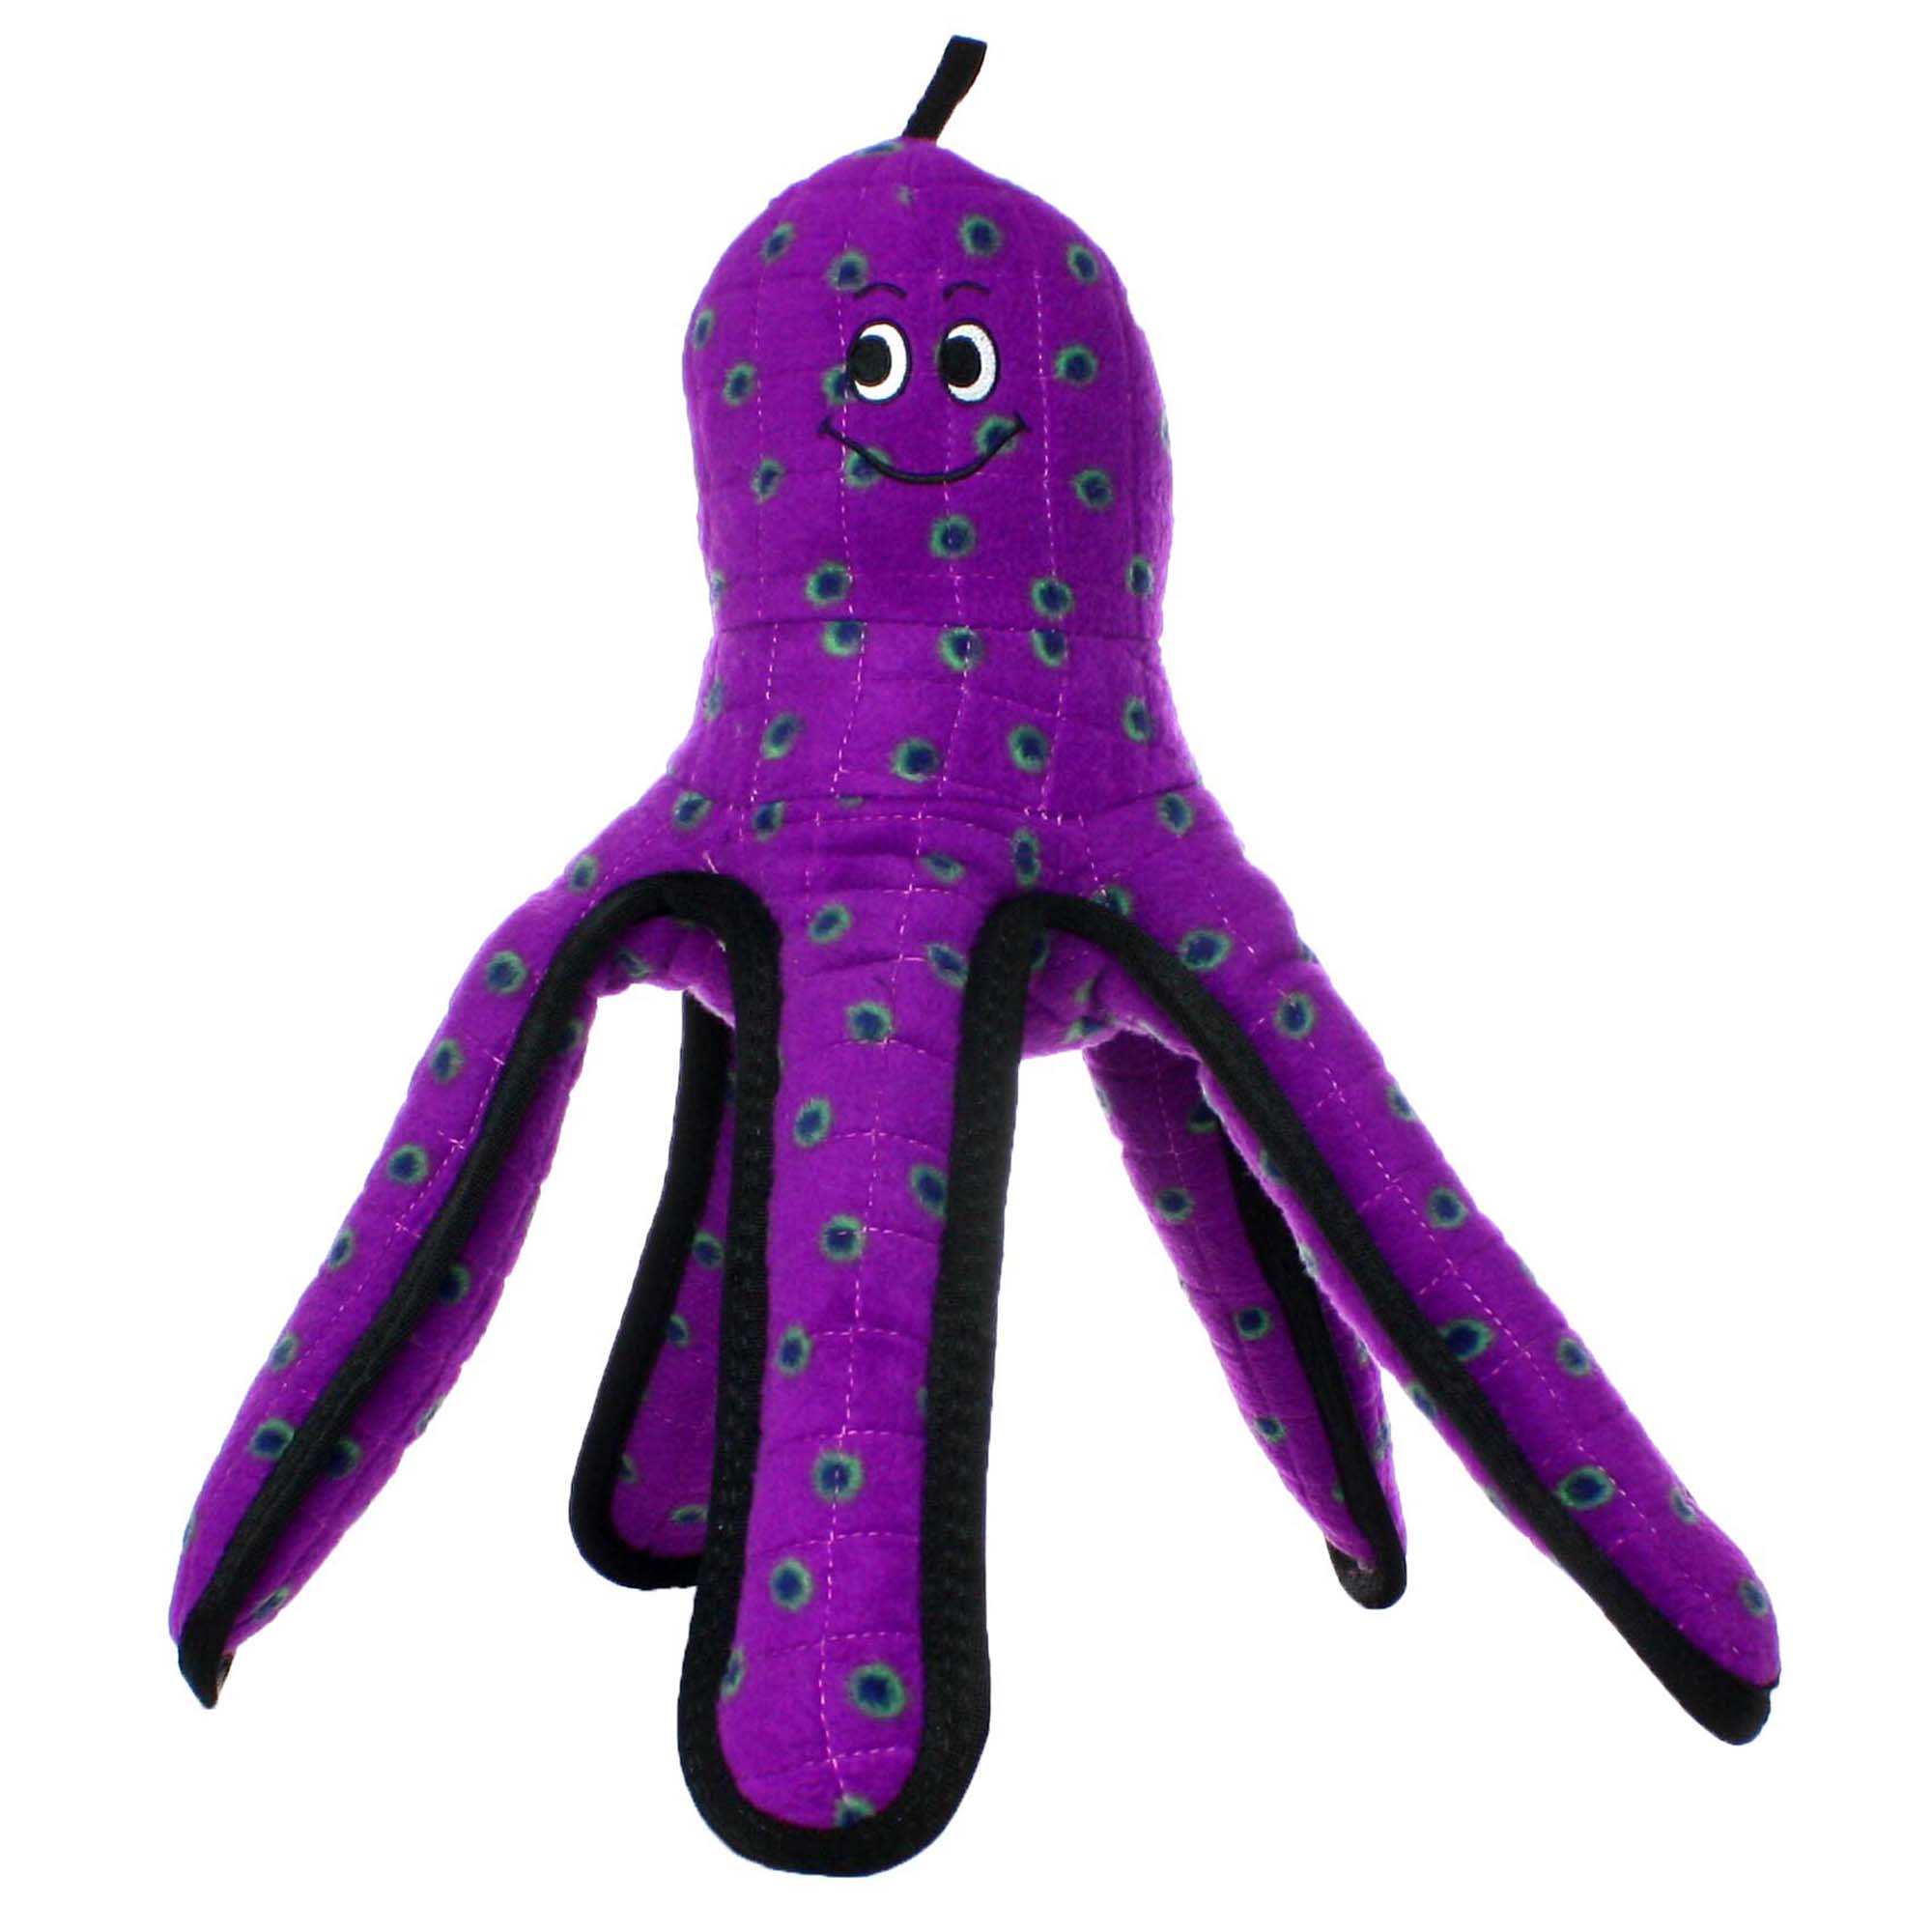 Tuffy's Purple Octopus Dog Toy, Large 